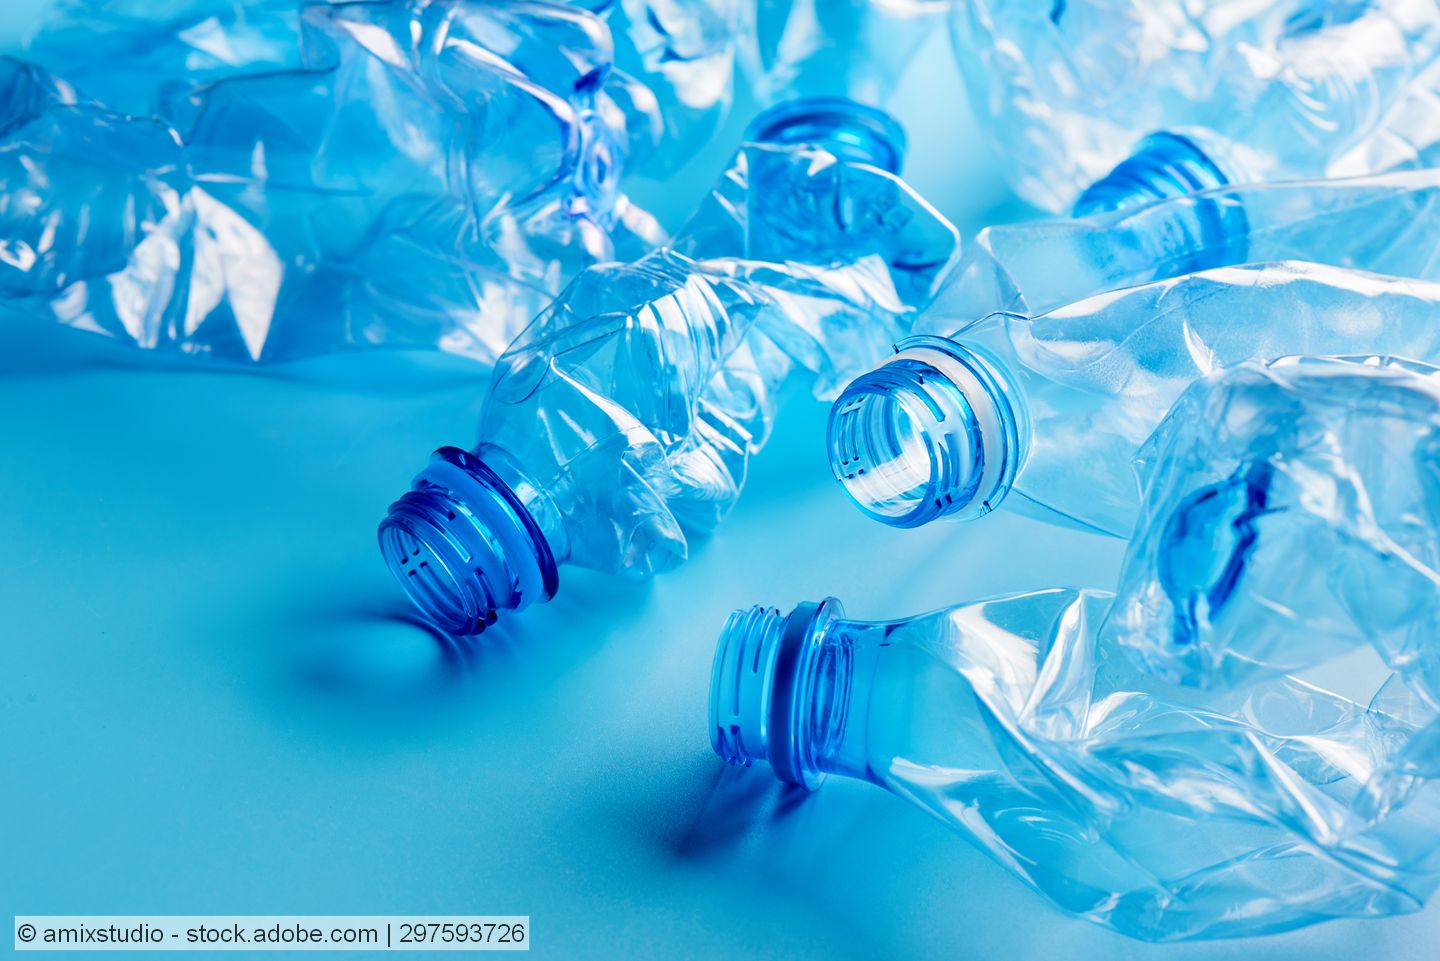 EUWID-Marktbericht gebrauchte PET-Flaschen: Juni sorgt für verbesserte Versorgungslage